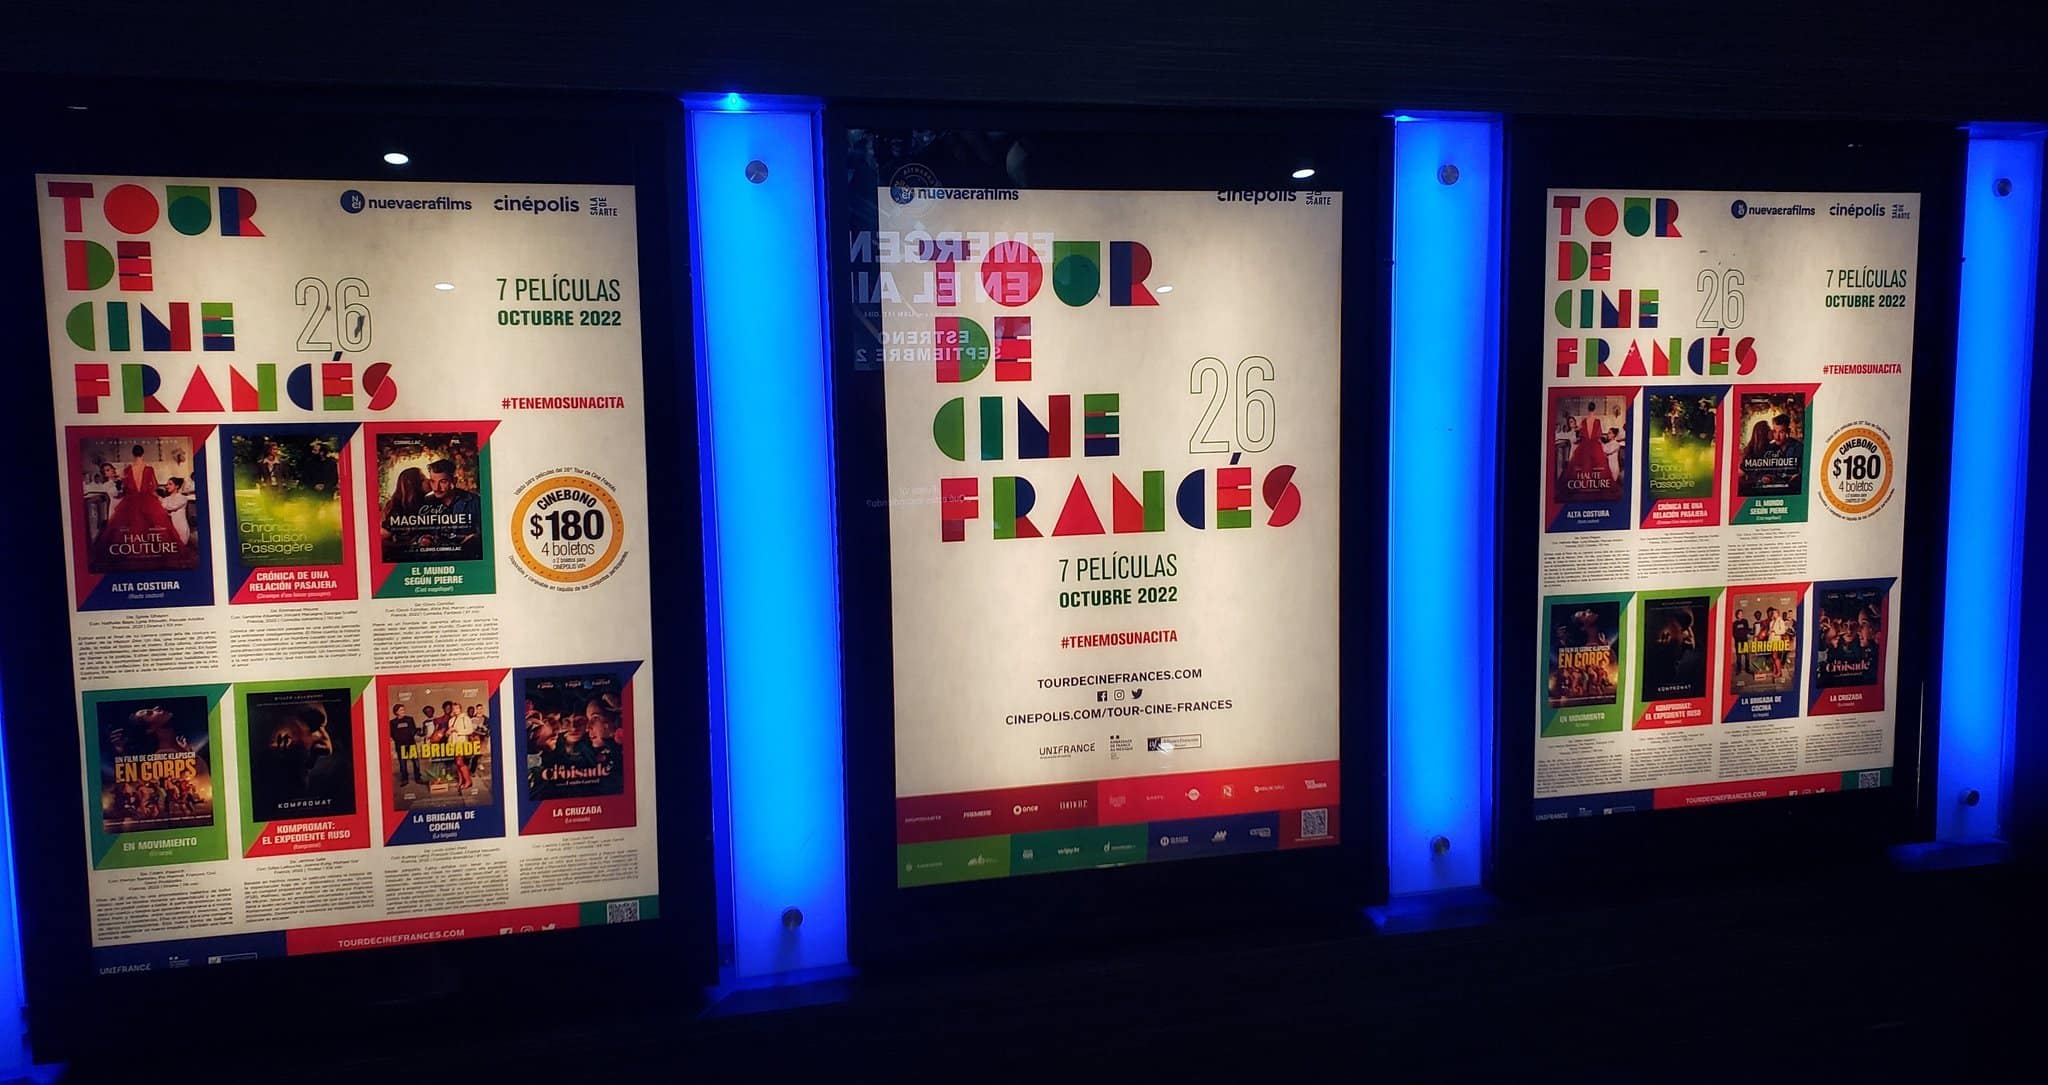 ¡Oh, la lá! Llega la edición 26 del Tour de Cine Francés